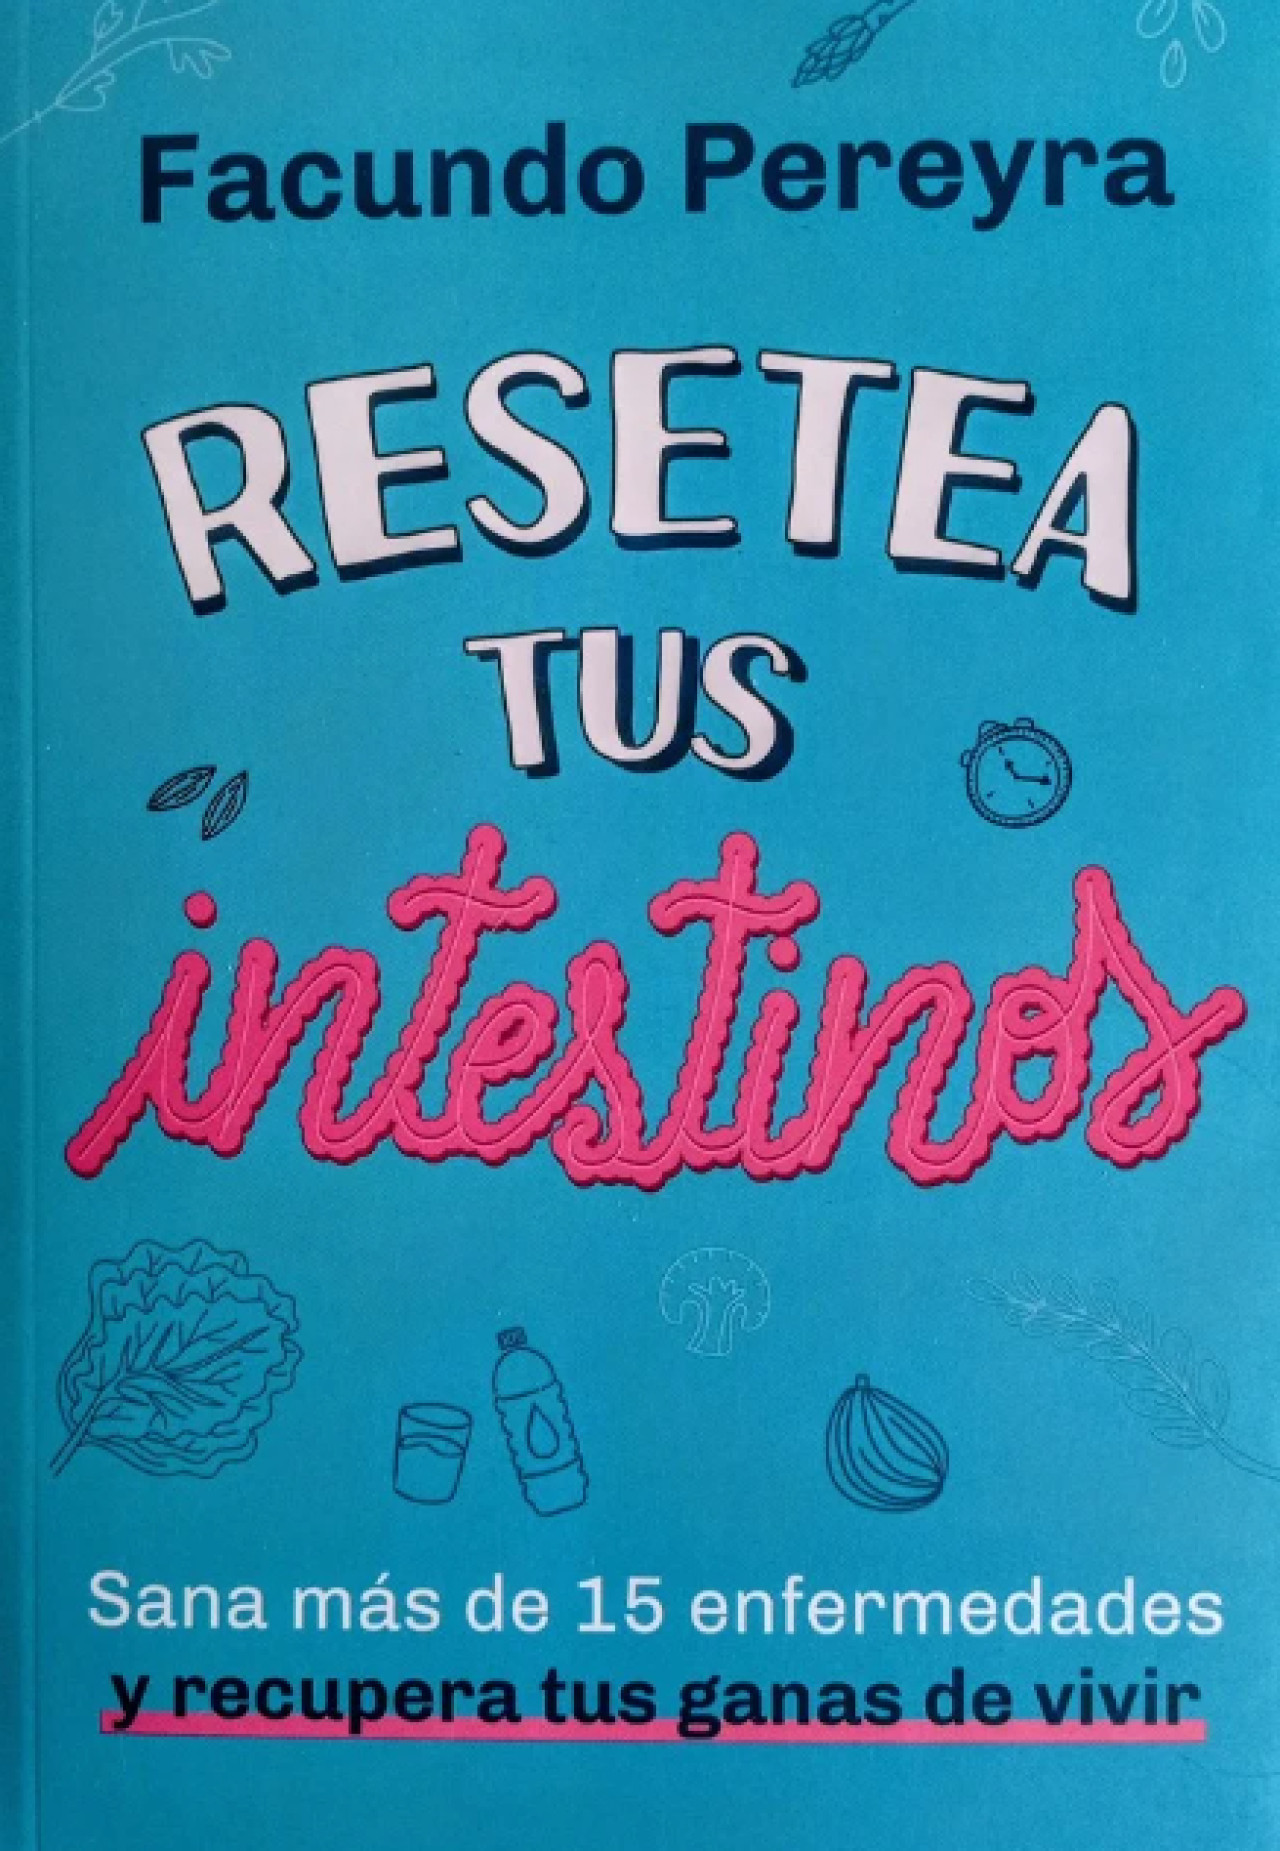 Portada del libro "Resetea tus intestinos", del Dr Facundo Pereyra. Foto: Archivo.